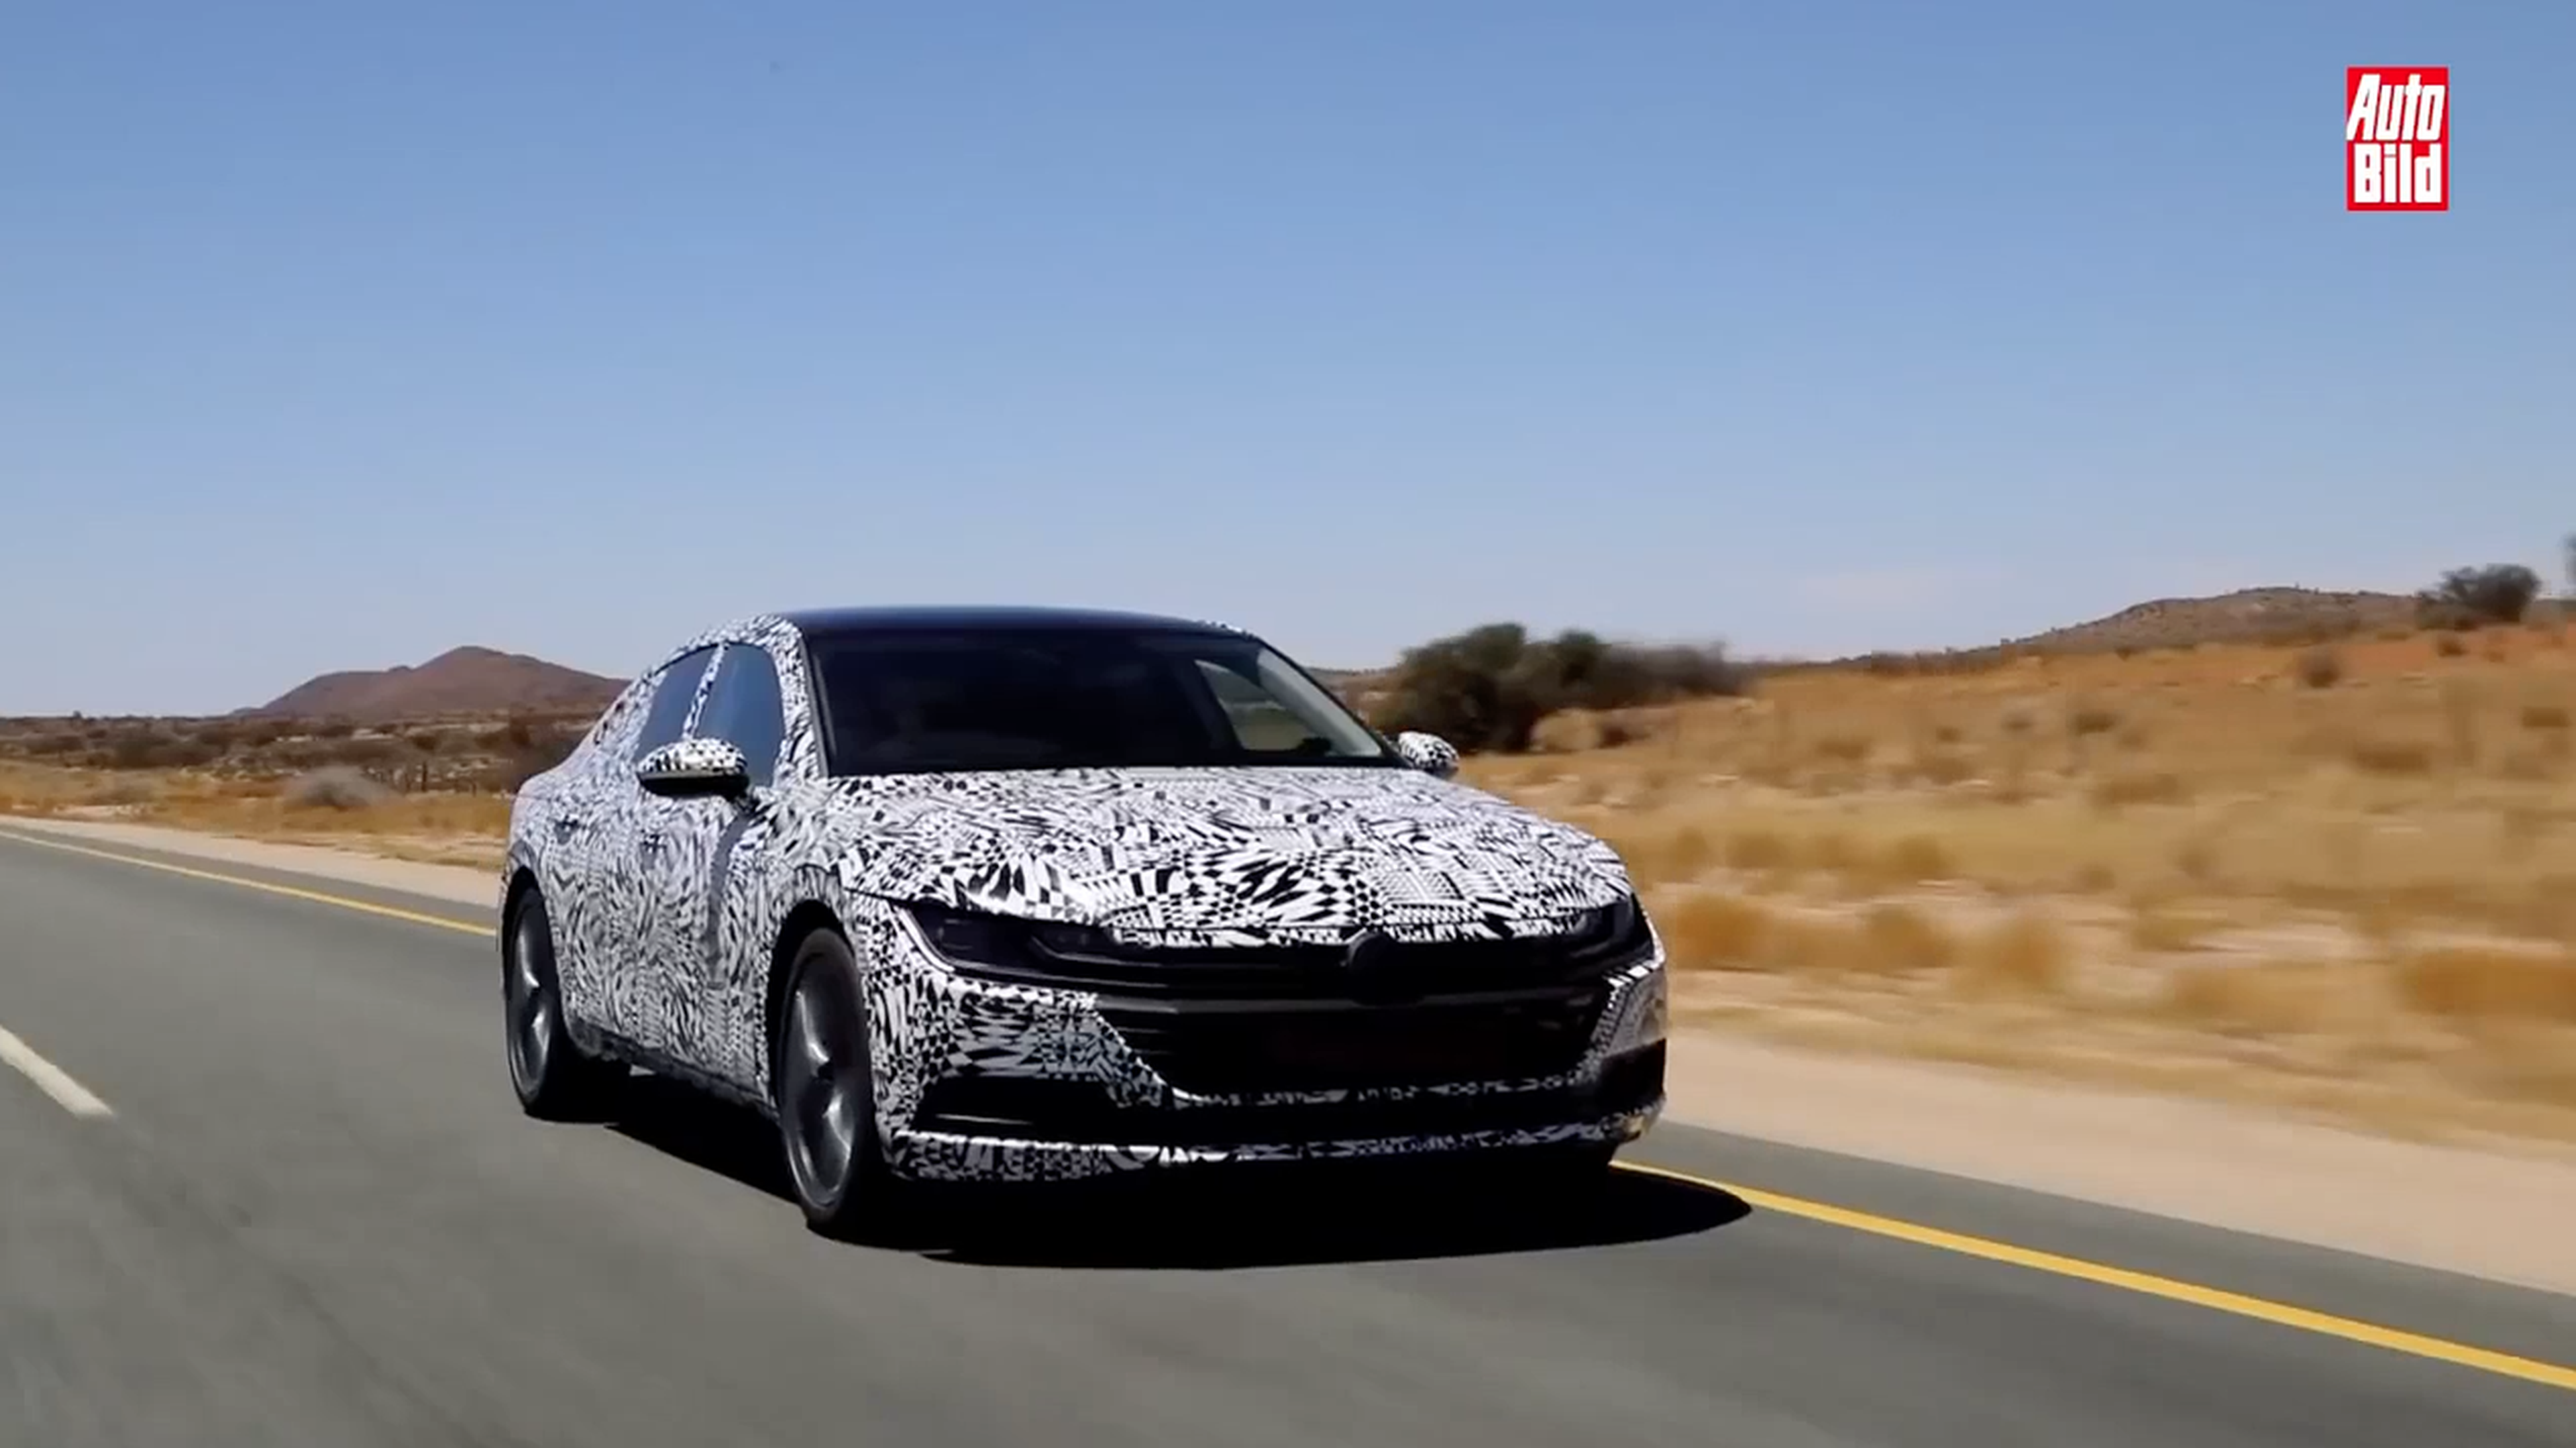 VÍDEO: Nuevo Volkswagen Arteon 2017 en movimiento